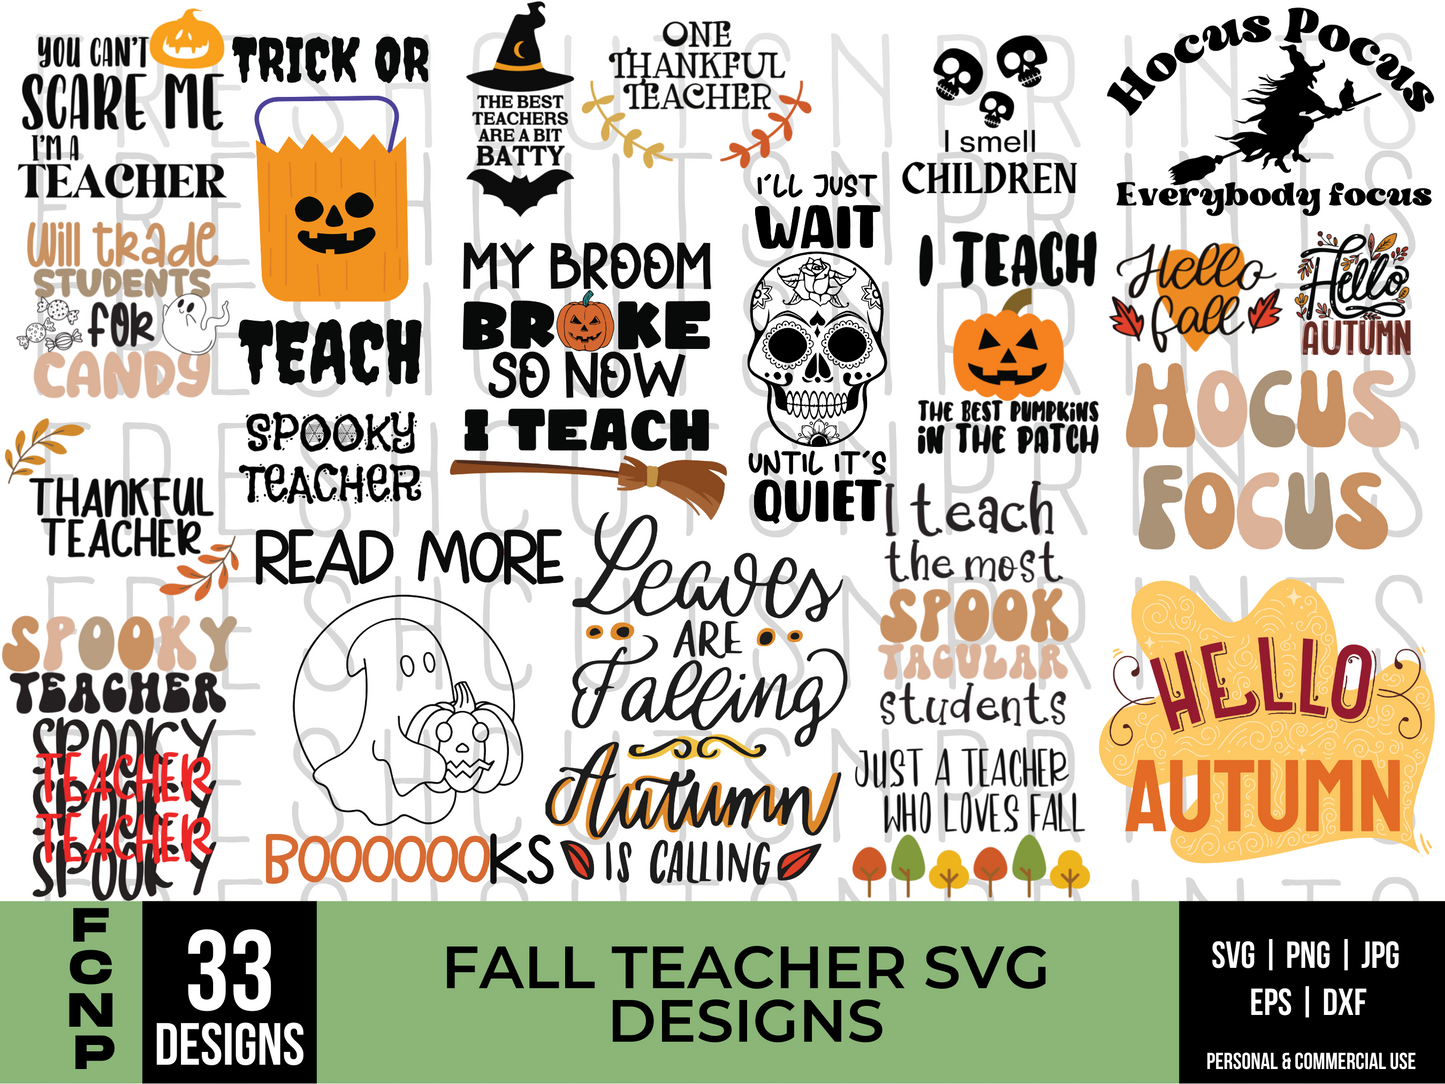 Fall Teacher SVG Bundle, Halloween Teacher svg, School svg, Autumn svg, Spooky Teacher svg, Teacher Shirt, SVG files for Cricut, Hello fall